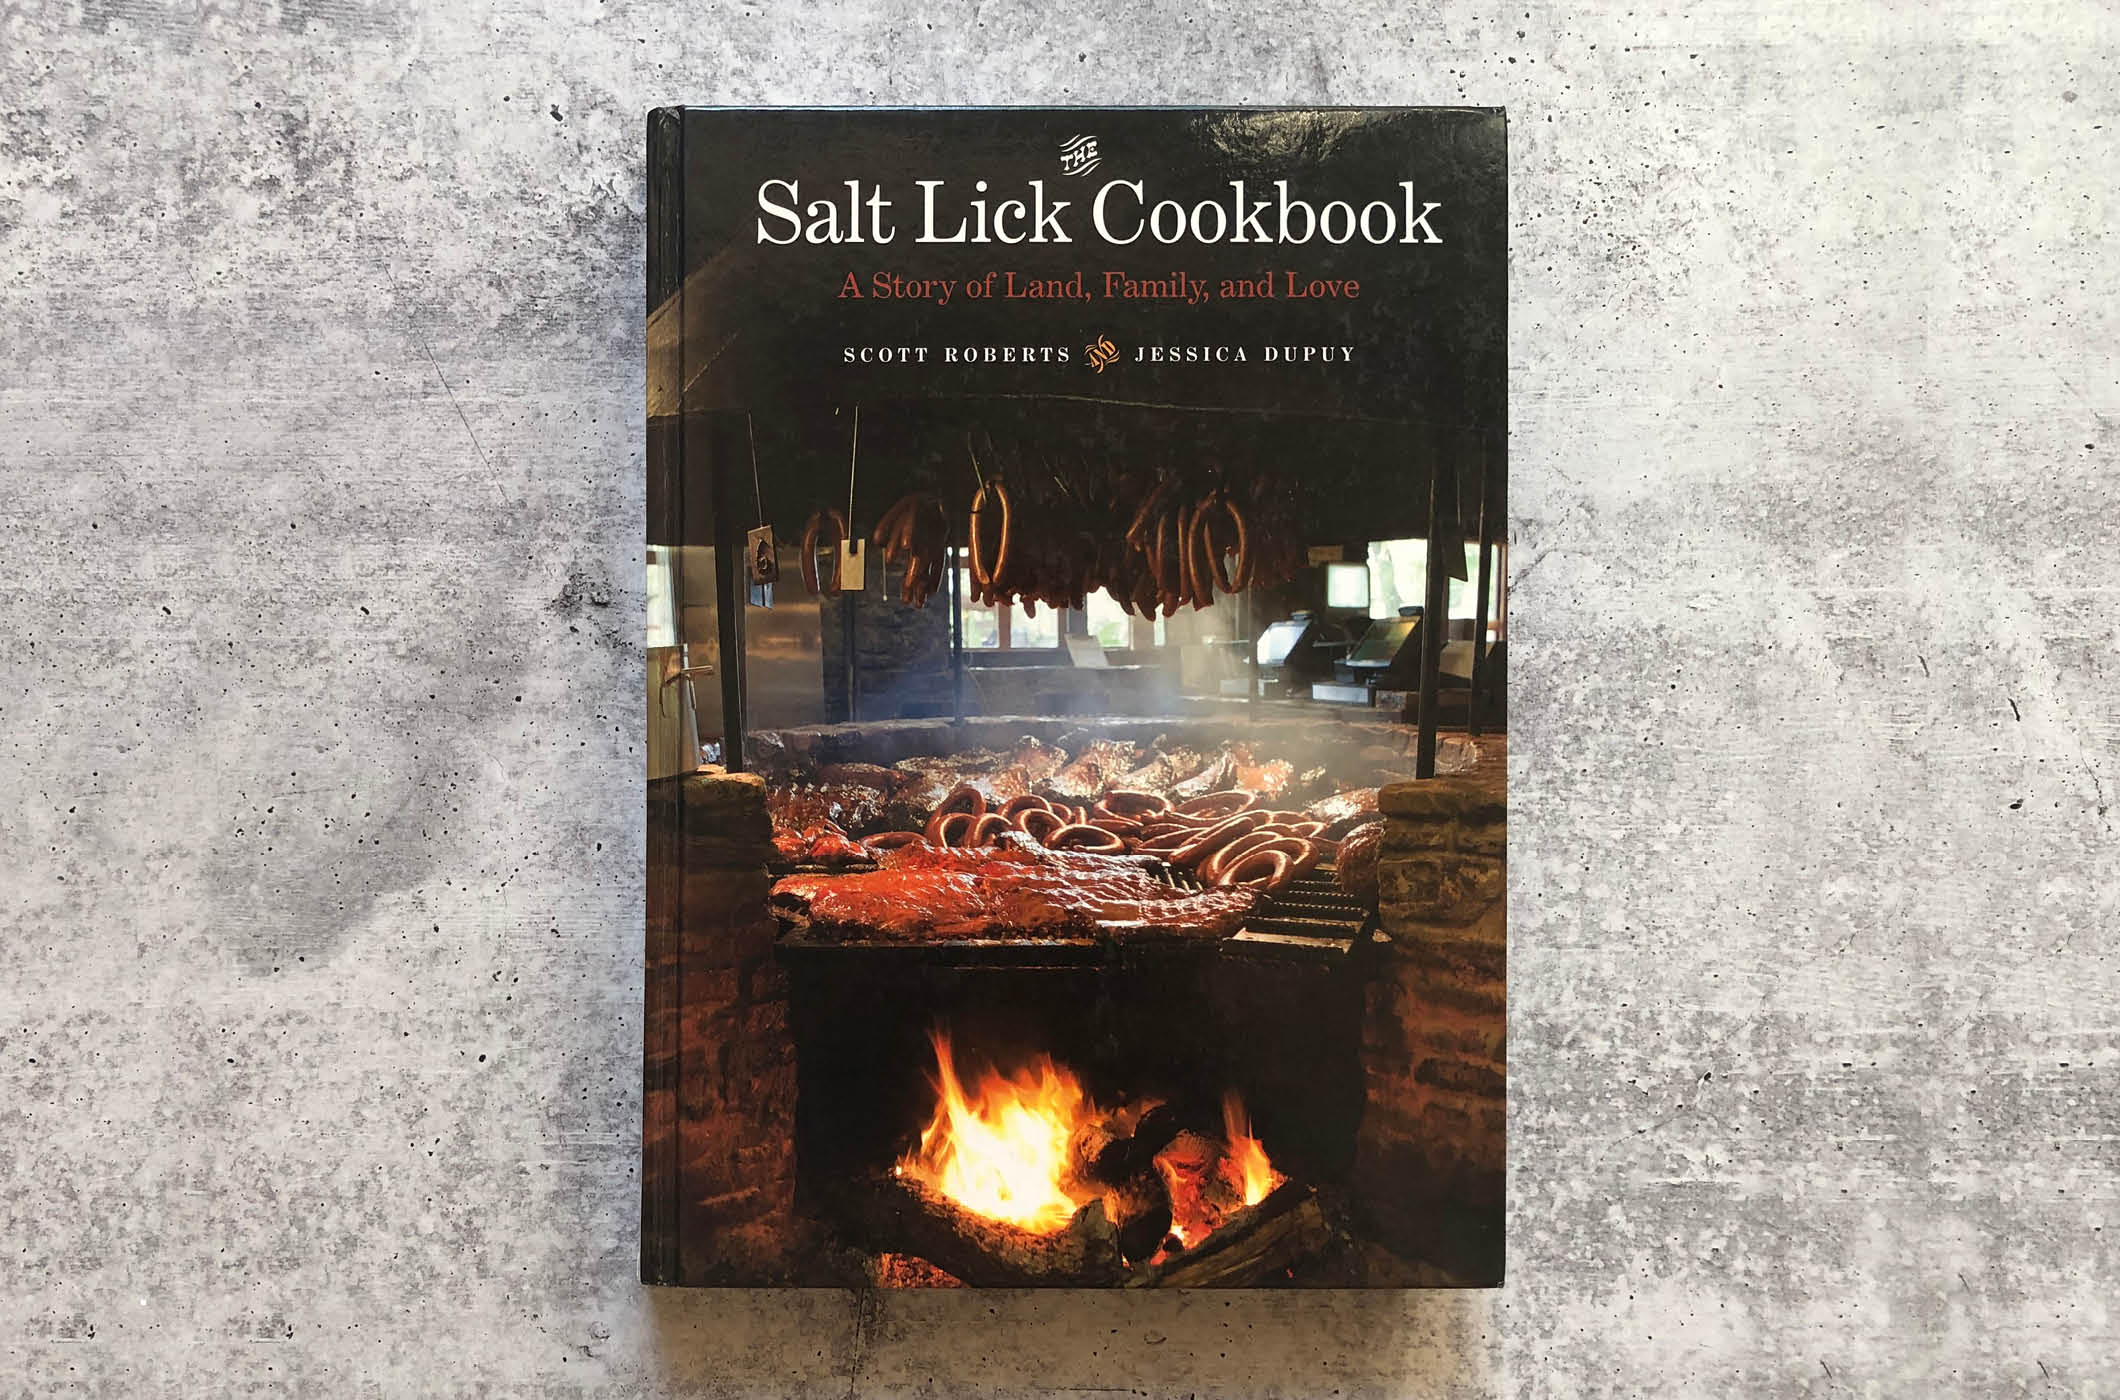 The Salt Lick Cookbook